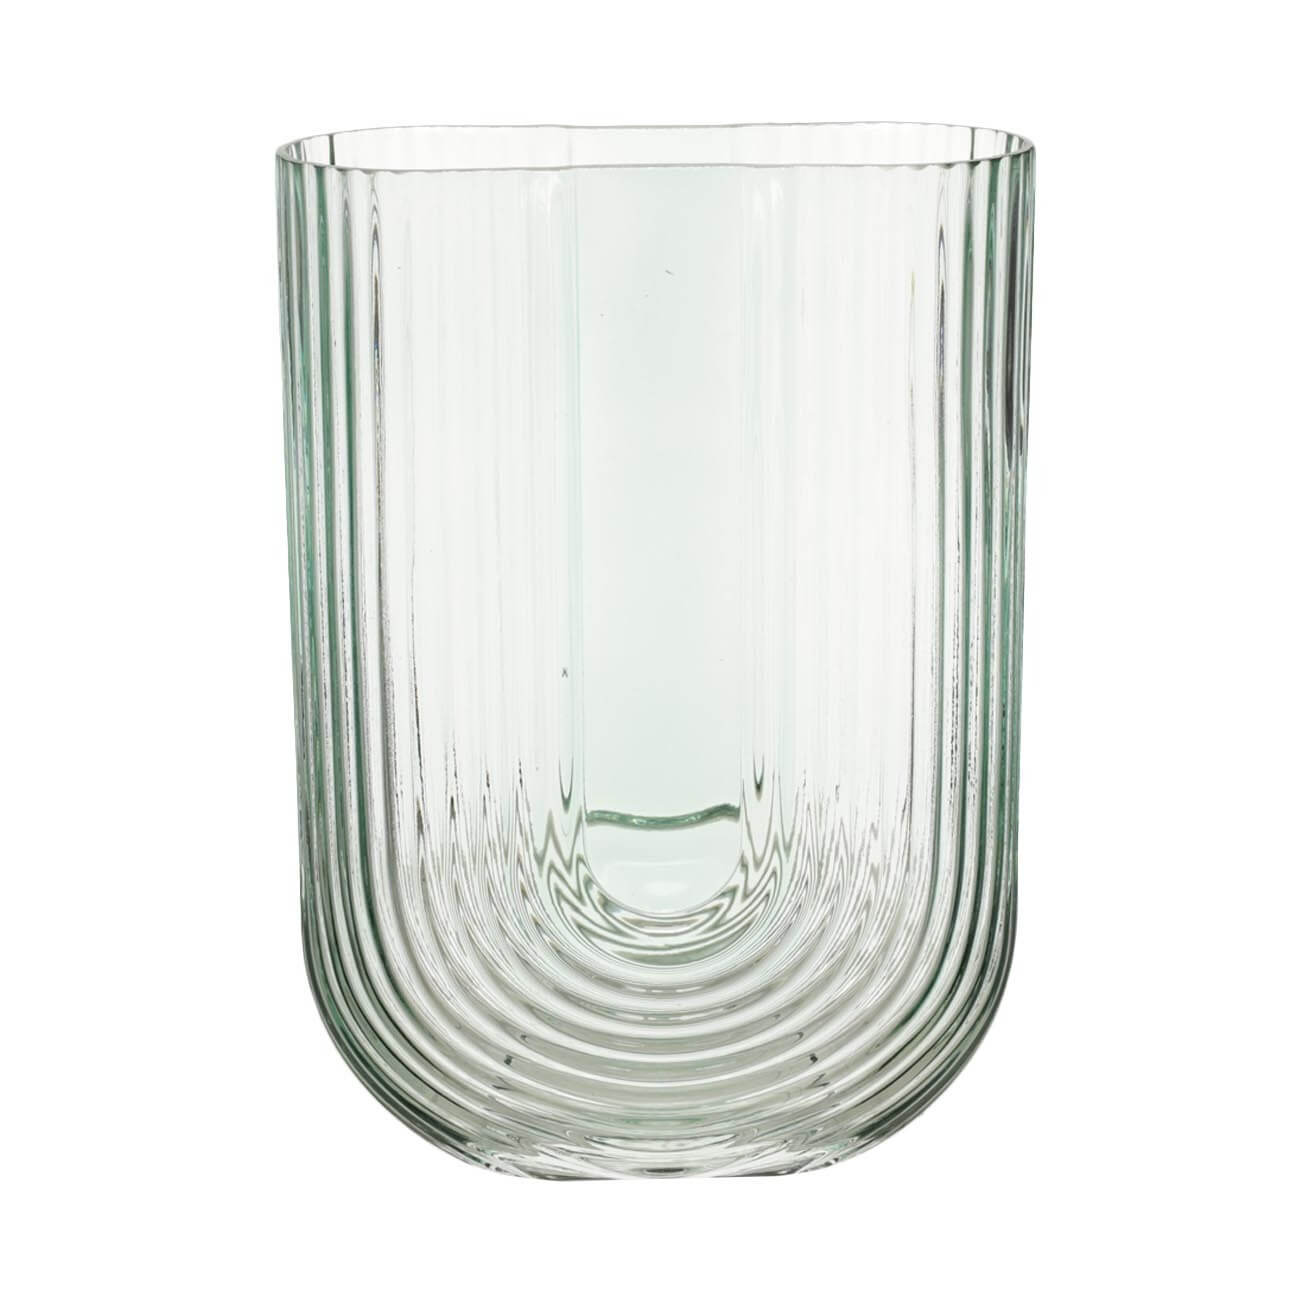 ваза для ов 23 см стекло зеленая арка arch Ваза для цветов, 23 см, стекло, зеленая, Арка, Arch